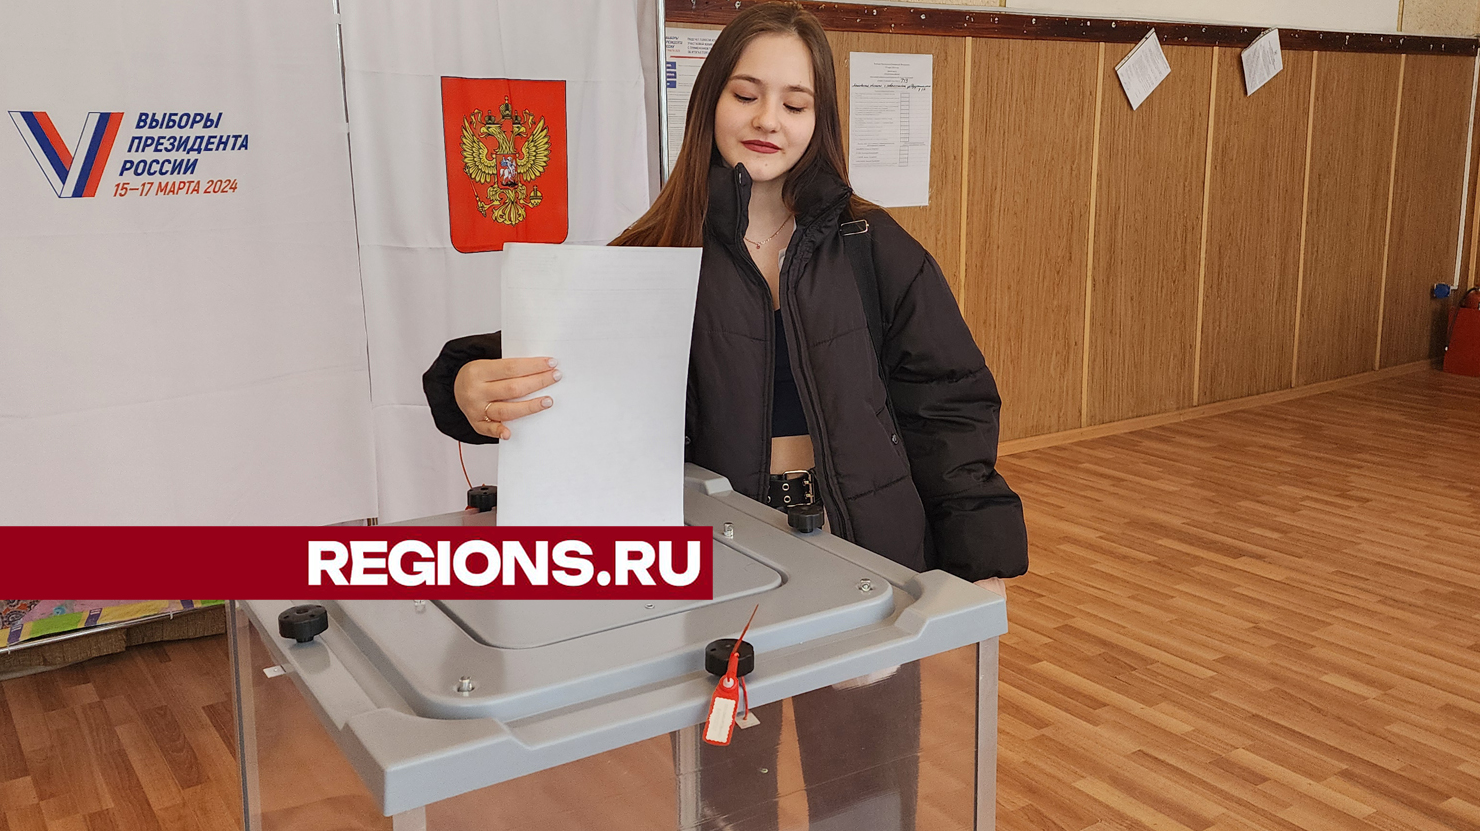 Юная Екатерина из Ивантеевки проголосовала на выборах президента в свой восемнадцатый день рождения